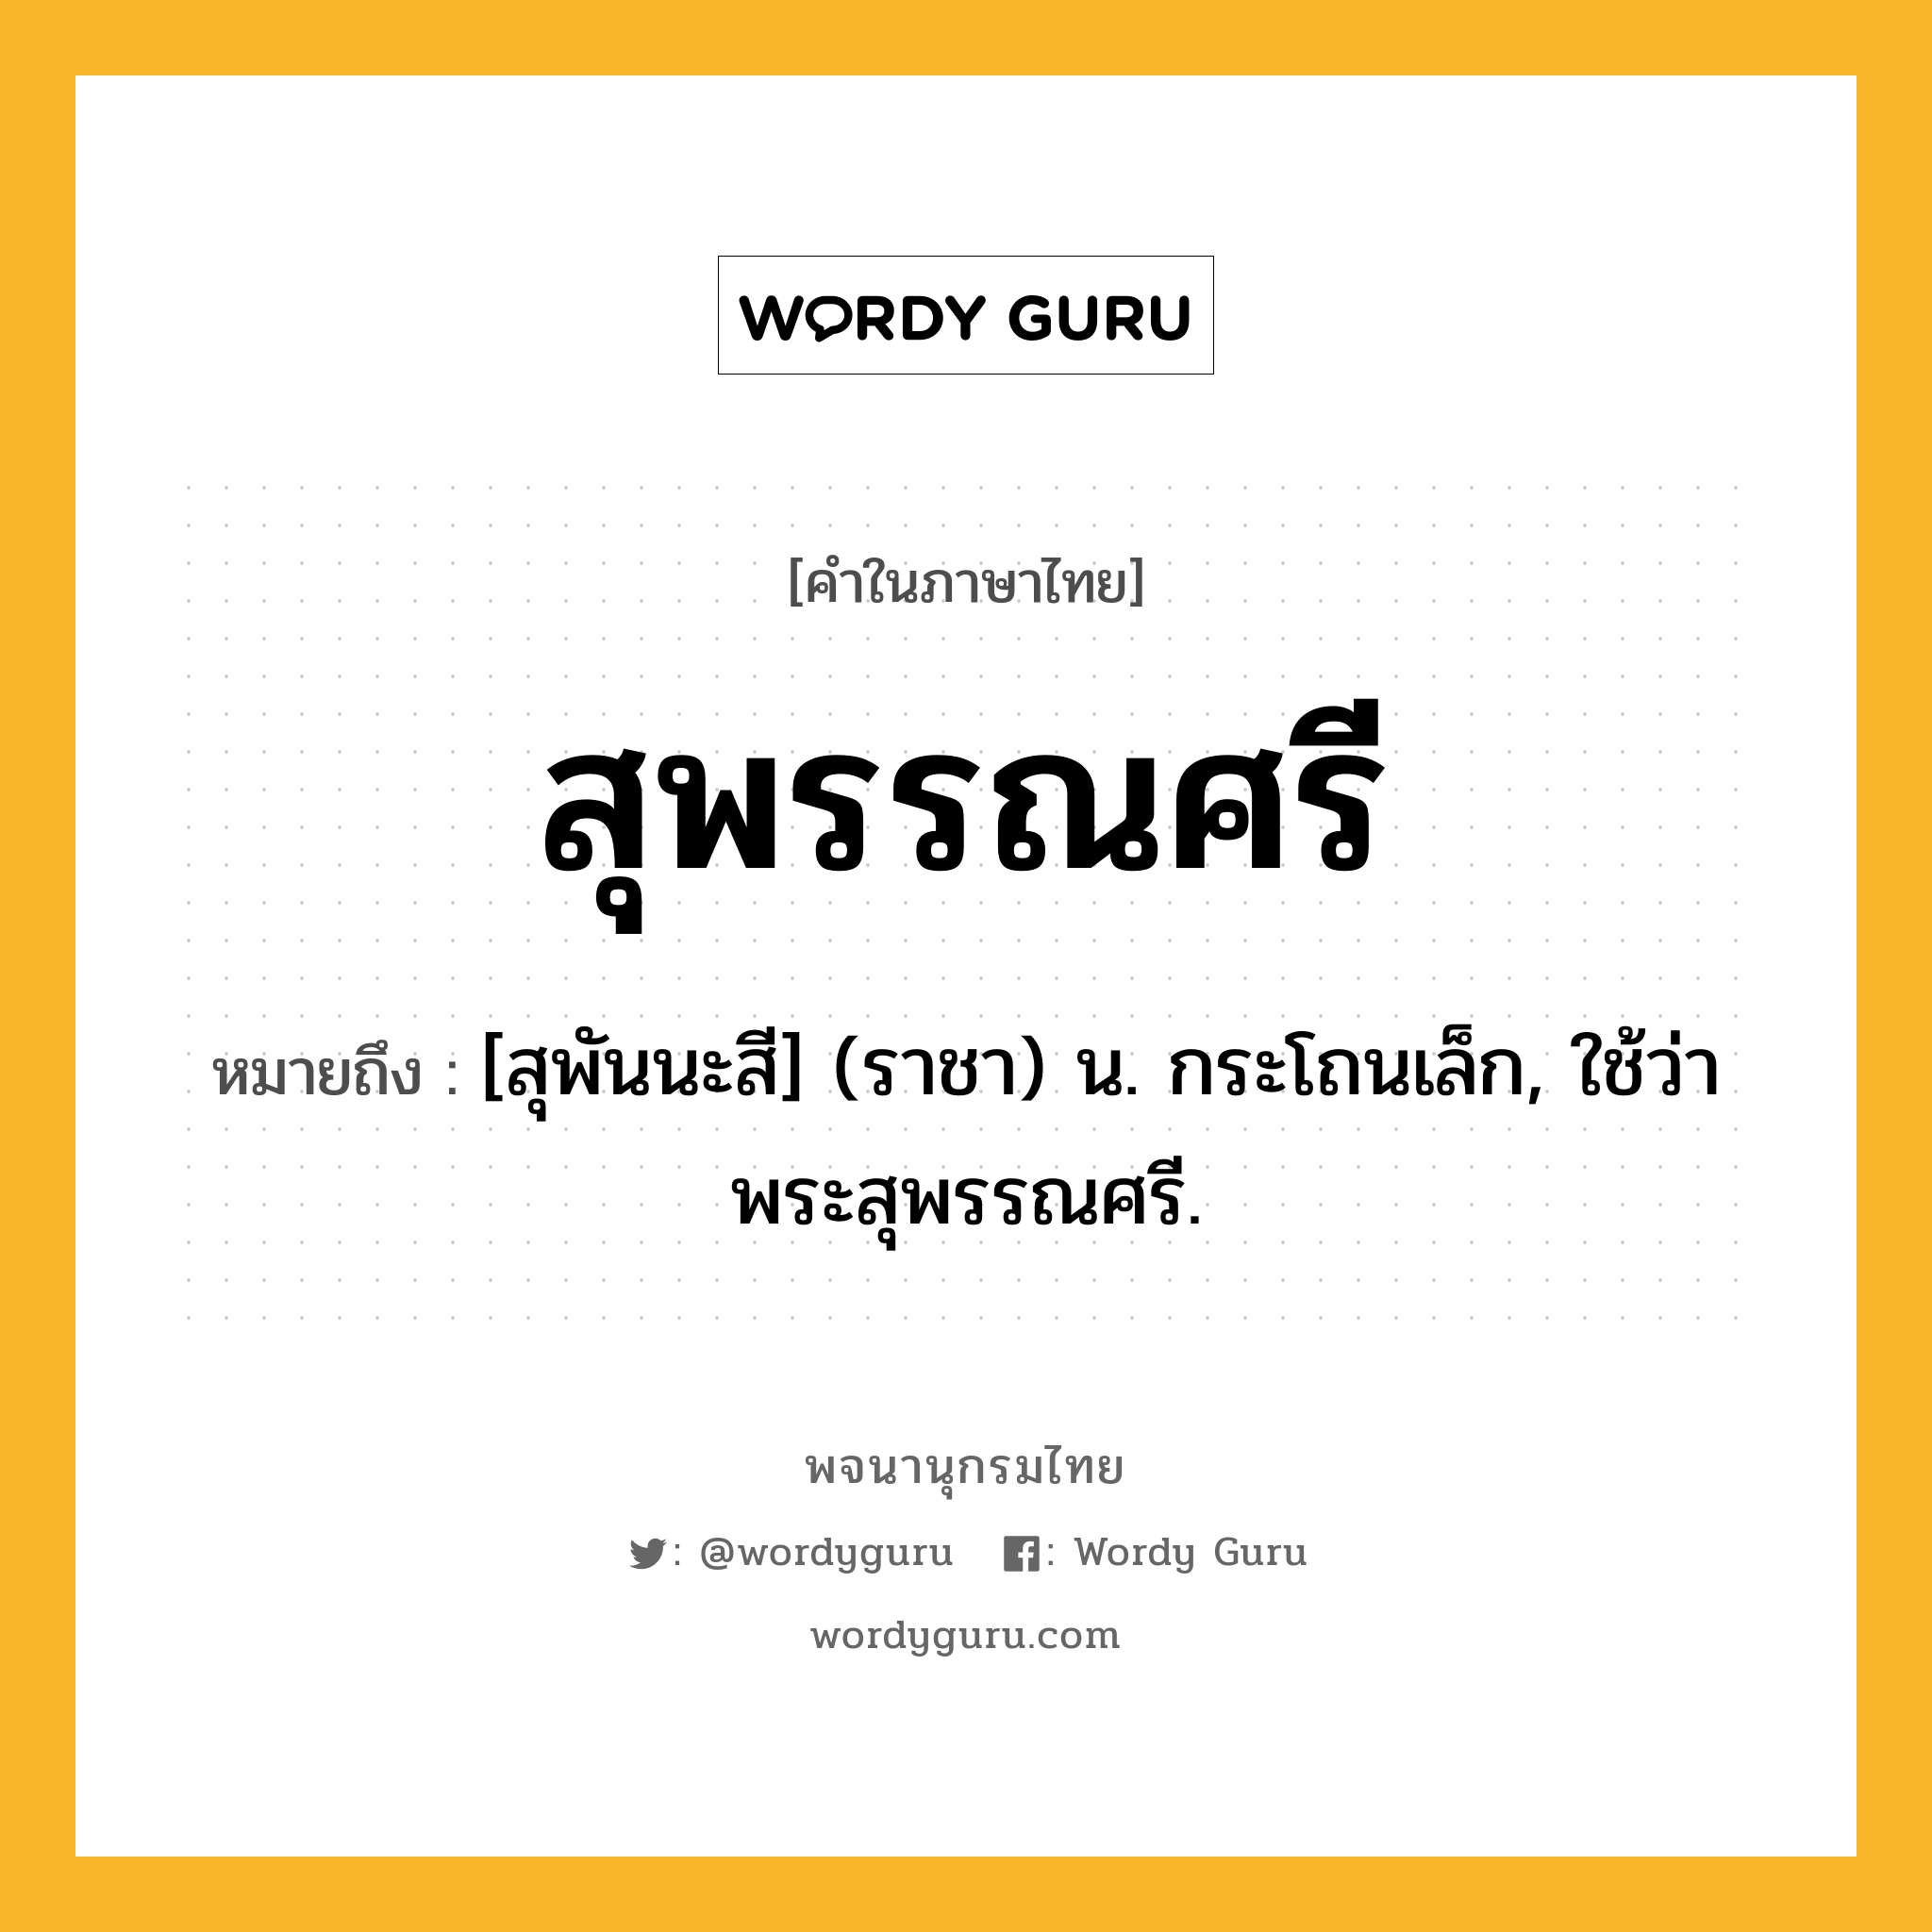 สุพรรณศรี หมายถึงอะไร?, คำในภาษาไทย สุพรรณศรี หมายถึง [สุพันนะสี] (ราชา) น. กระโถนเล็ก, ใช้ว่า พระสุพรรณศรี.